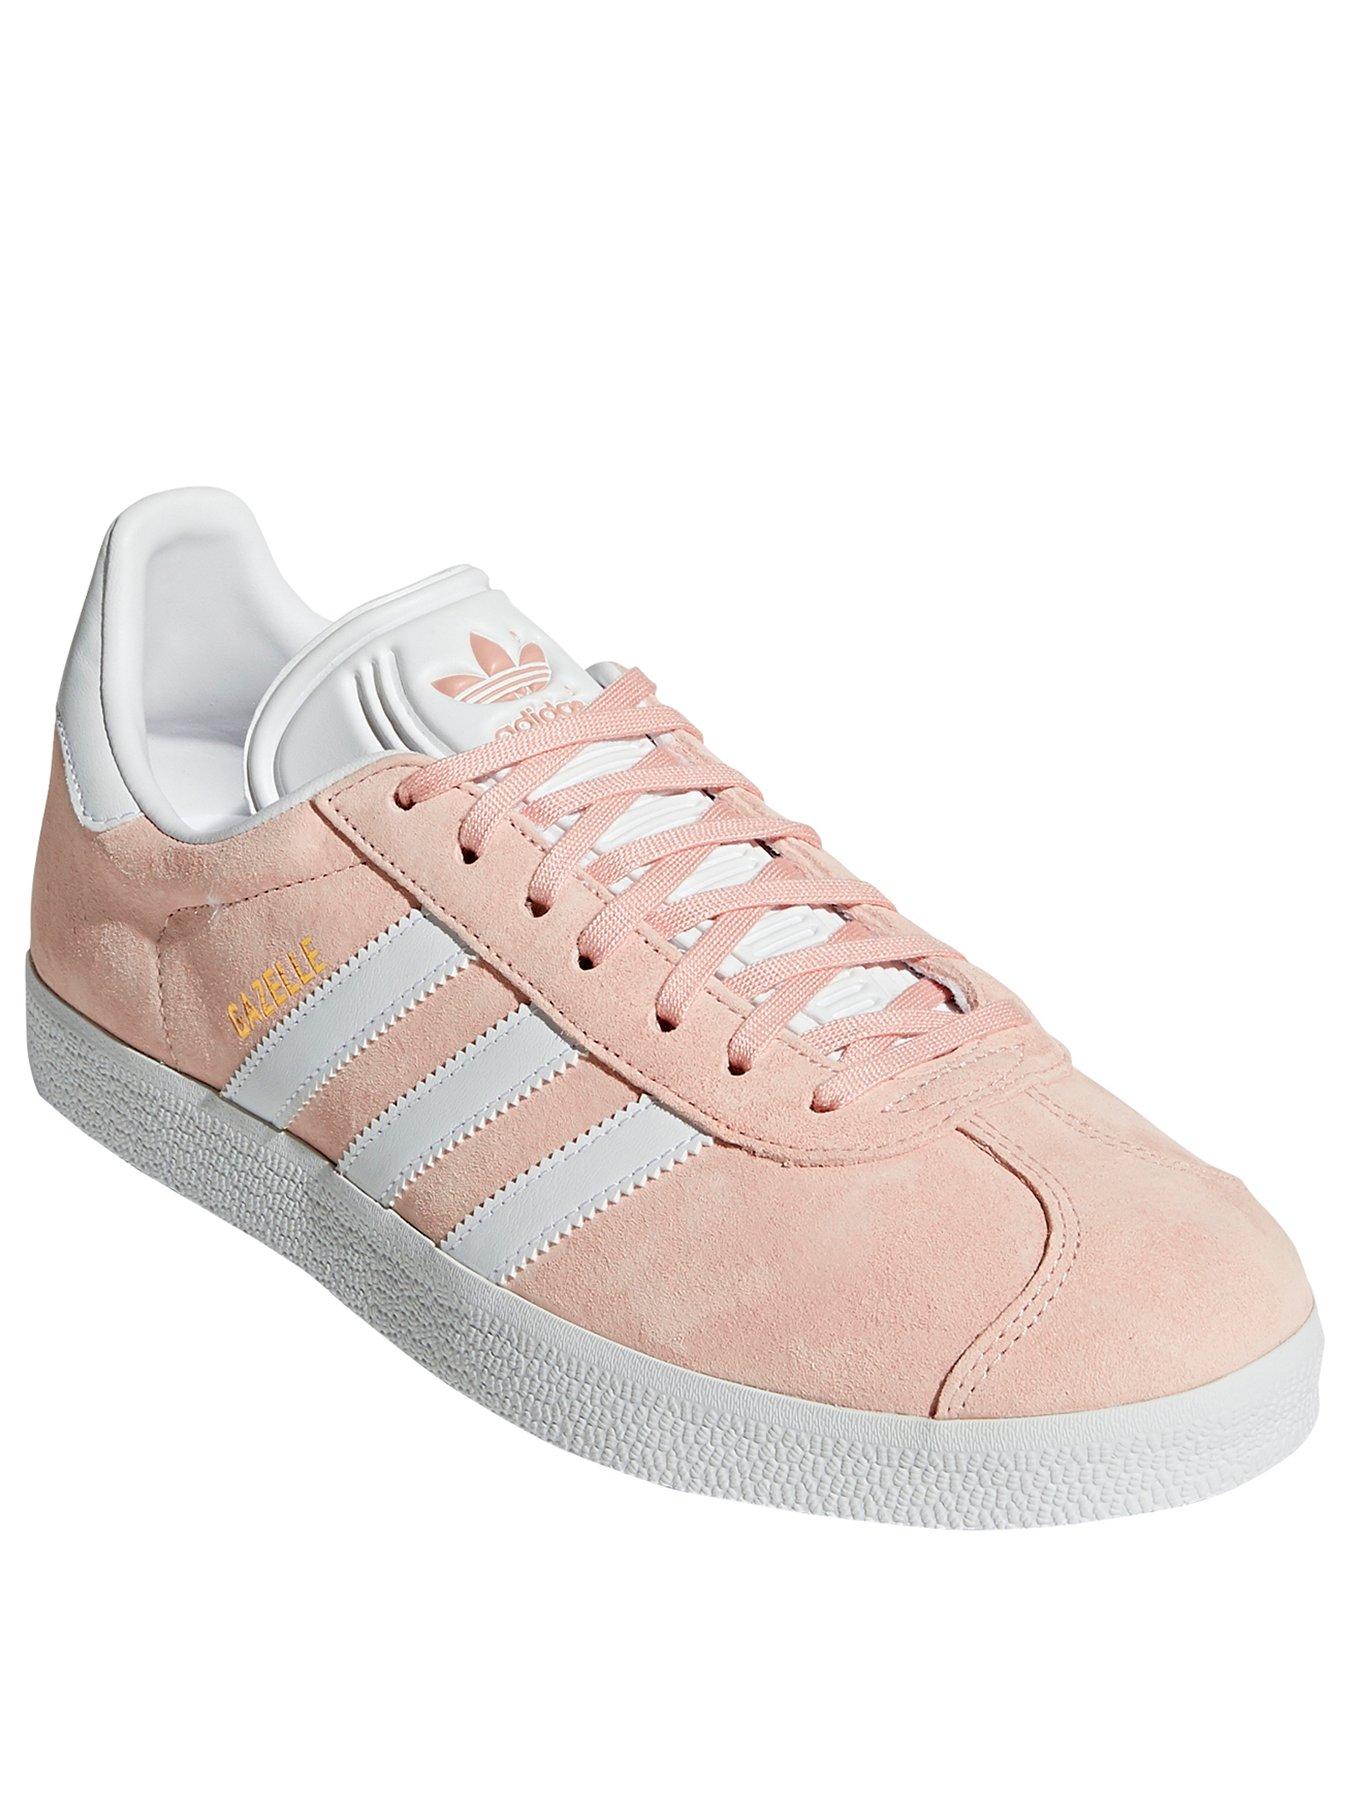 adidas gazelle white pink